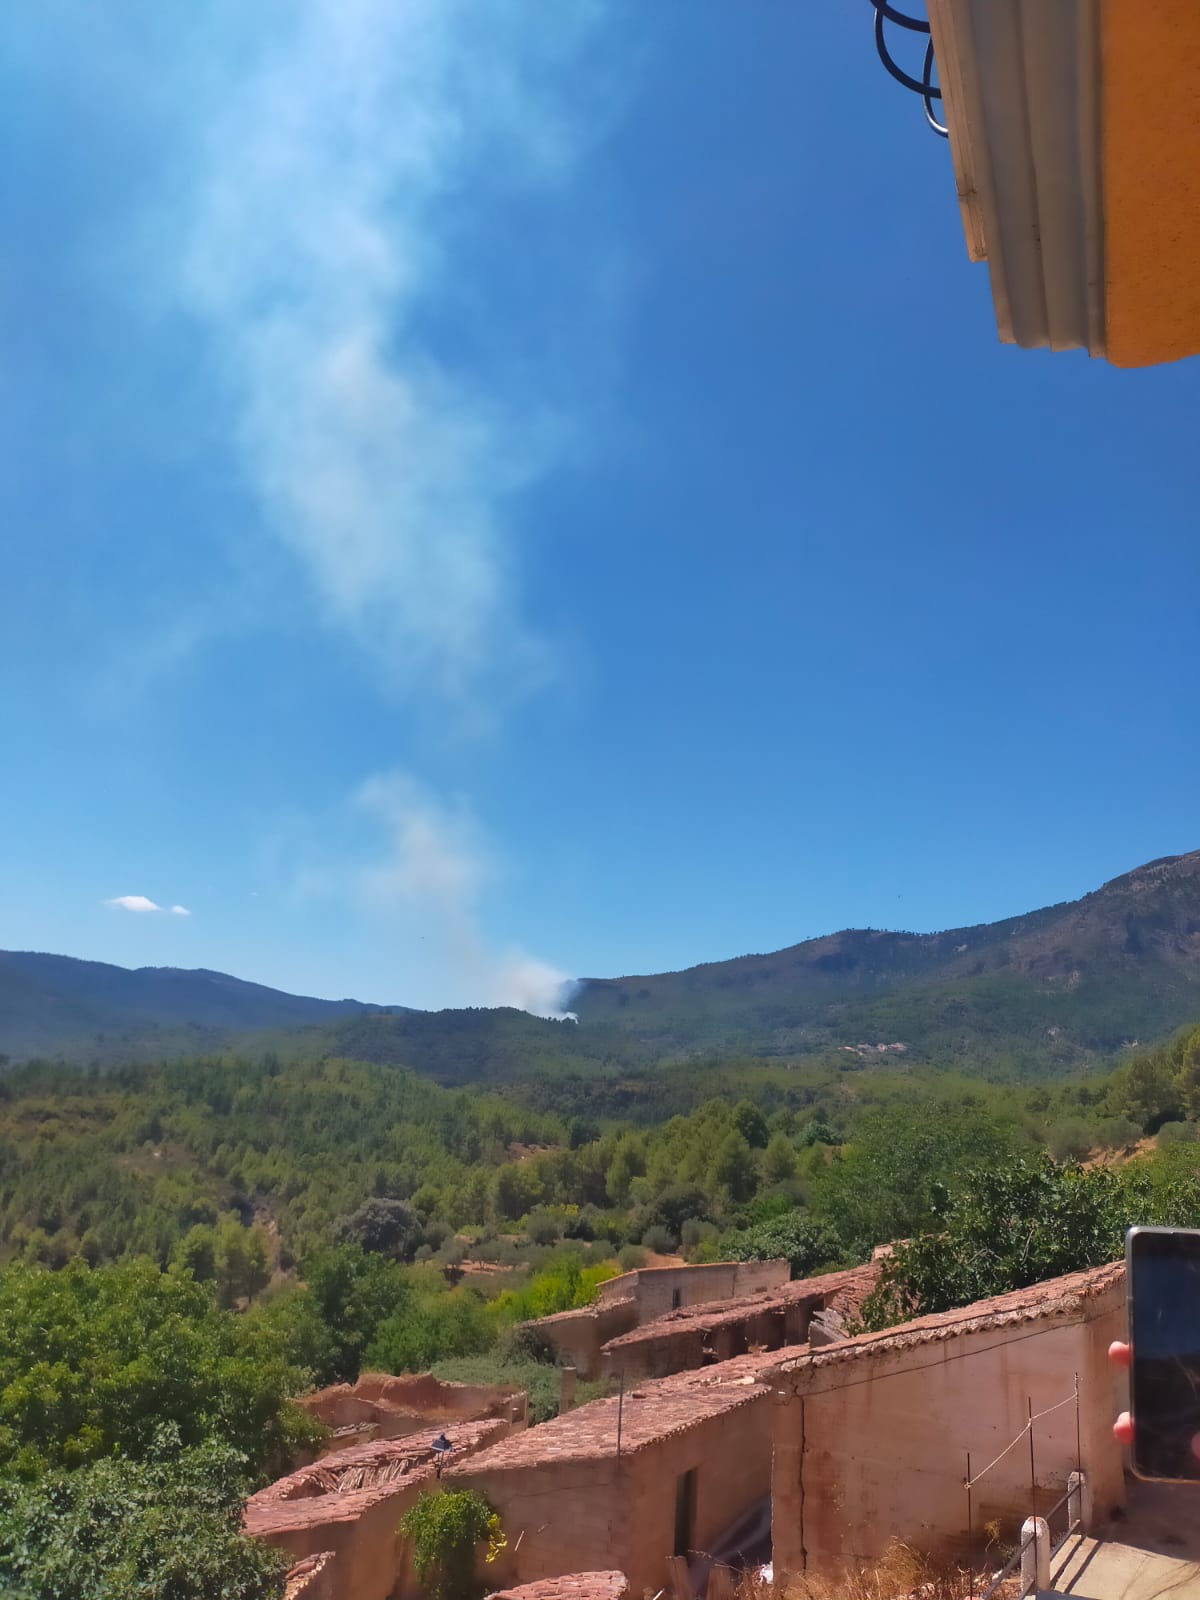 Incendio forestal en la provincia de Albacete / Imagen Marta Murillo